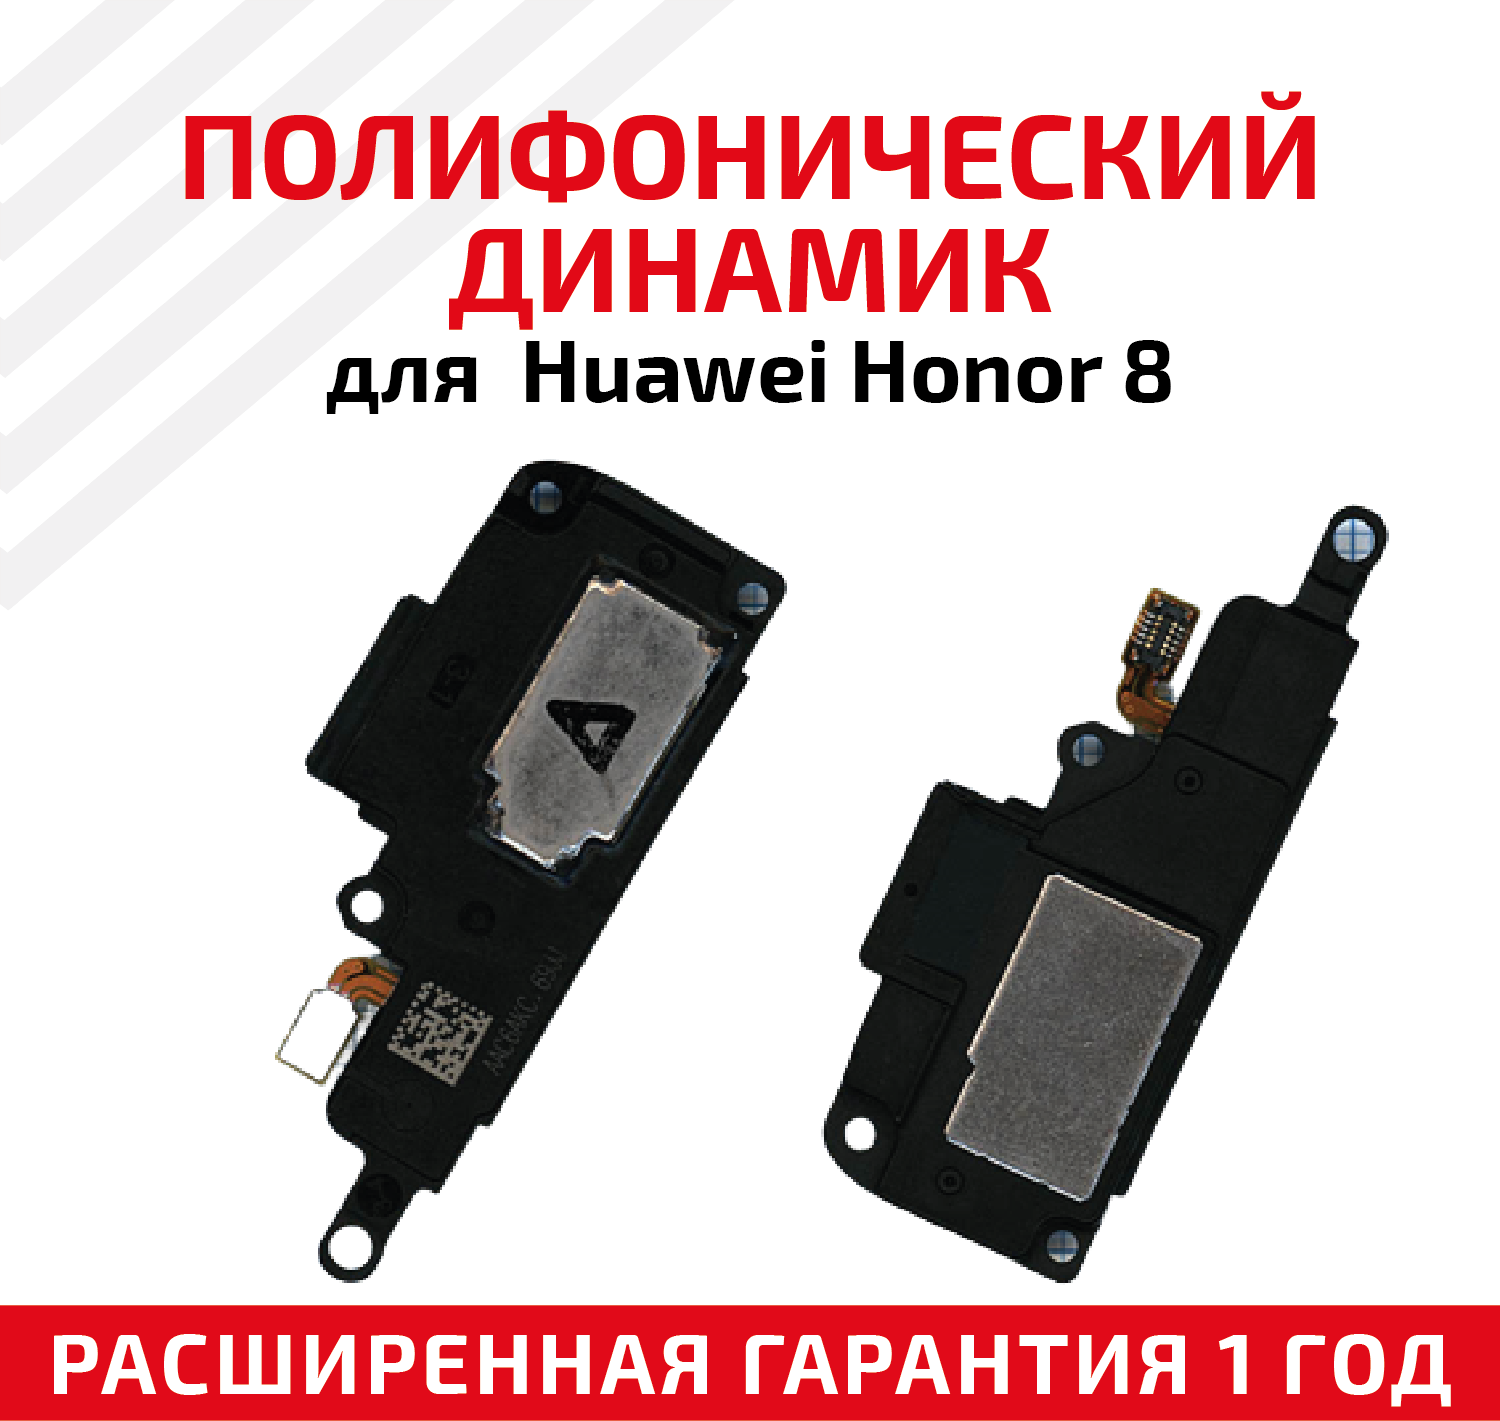 Полифонический динамик (Buzzer, бузер, звонок) для мобильного телефона (смартфона) Huawei Honor 8